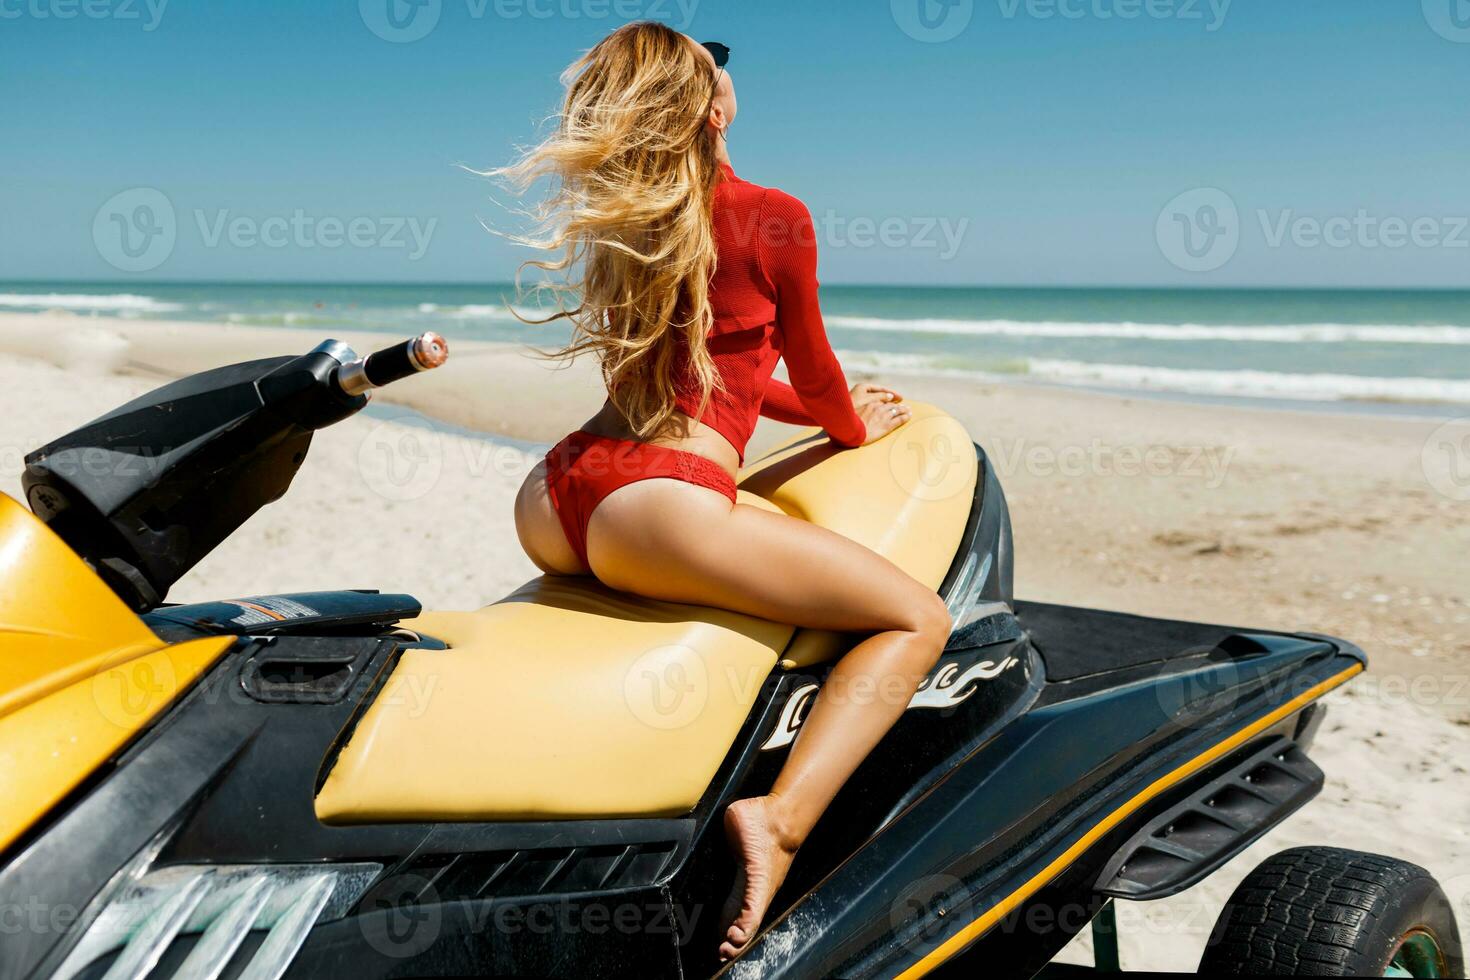 se från tillbaka av sexig solbränd kvinna bikini modell på tropisk sand strand. glamour flicka i baddräkt på de vatten skoter. foto